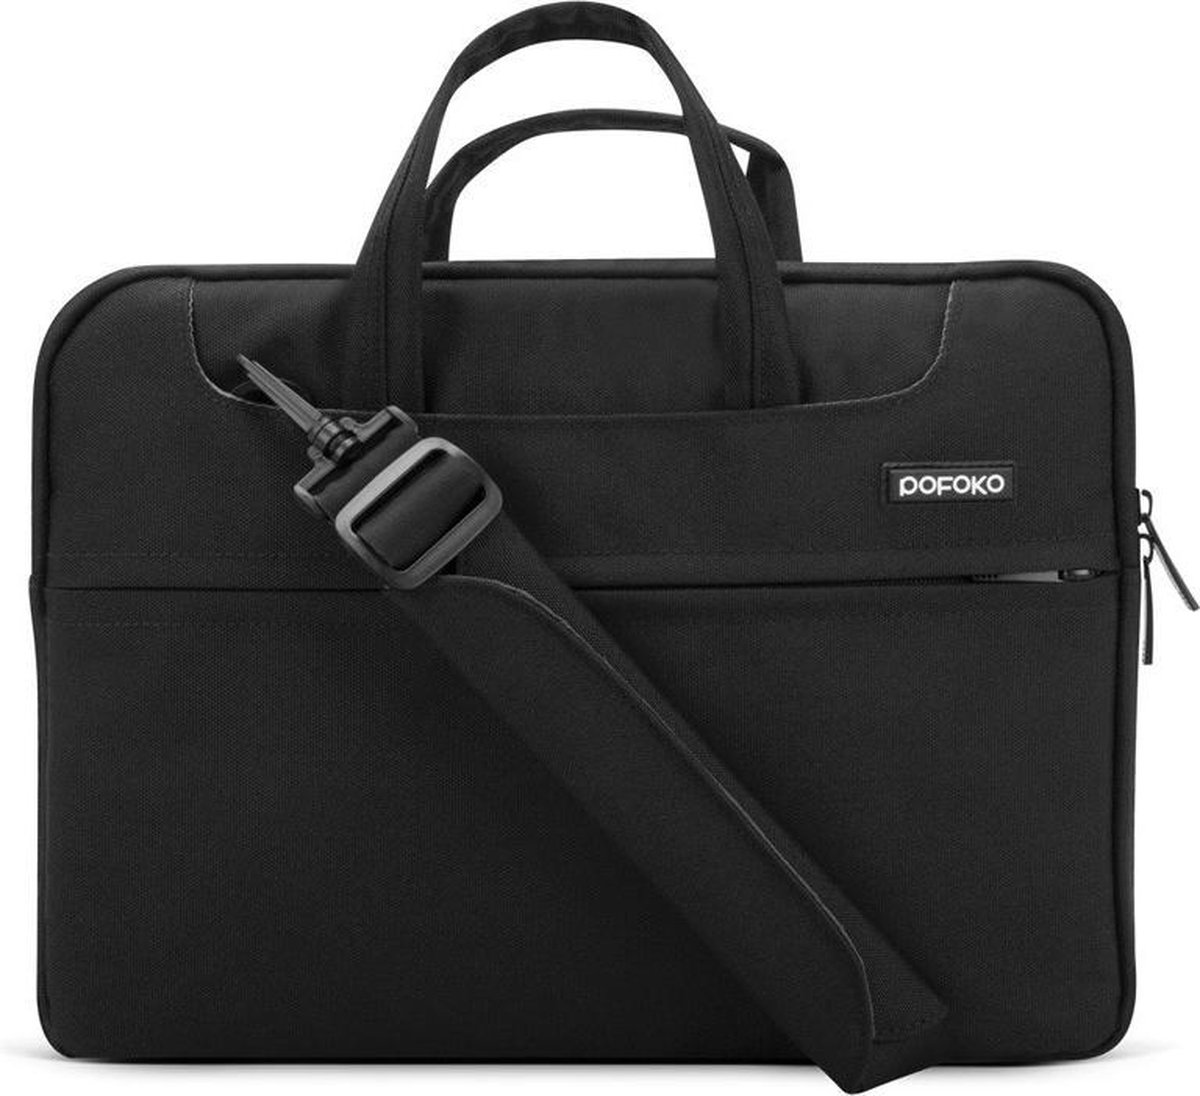 POFOKO 12 inch laptoptas met schouderband - Zwart